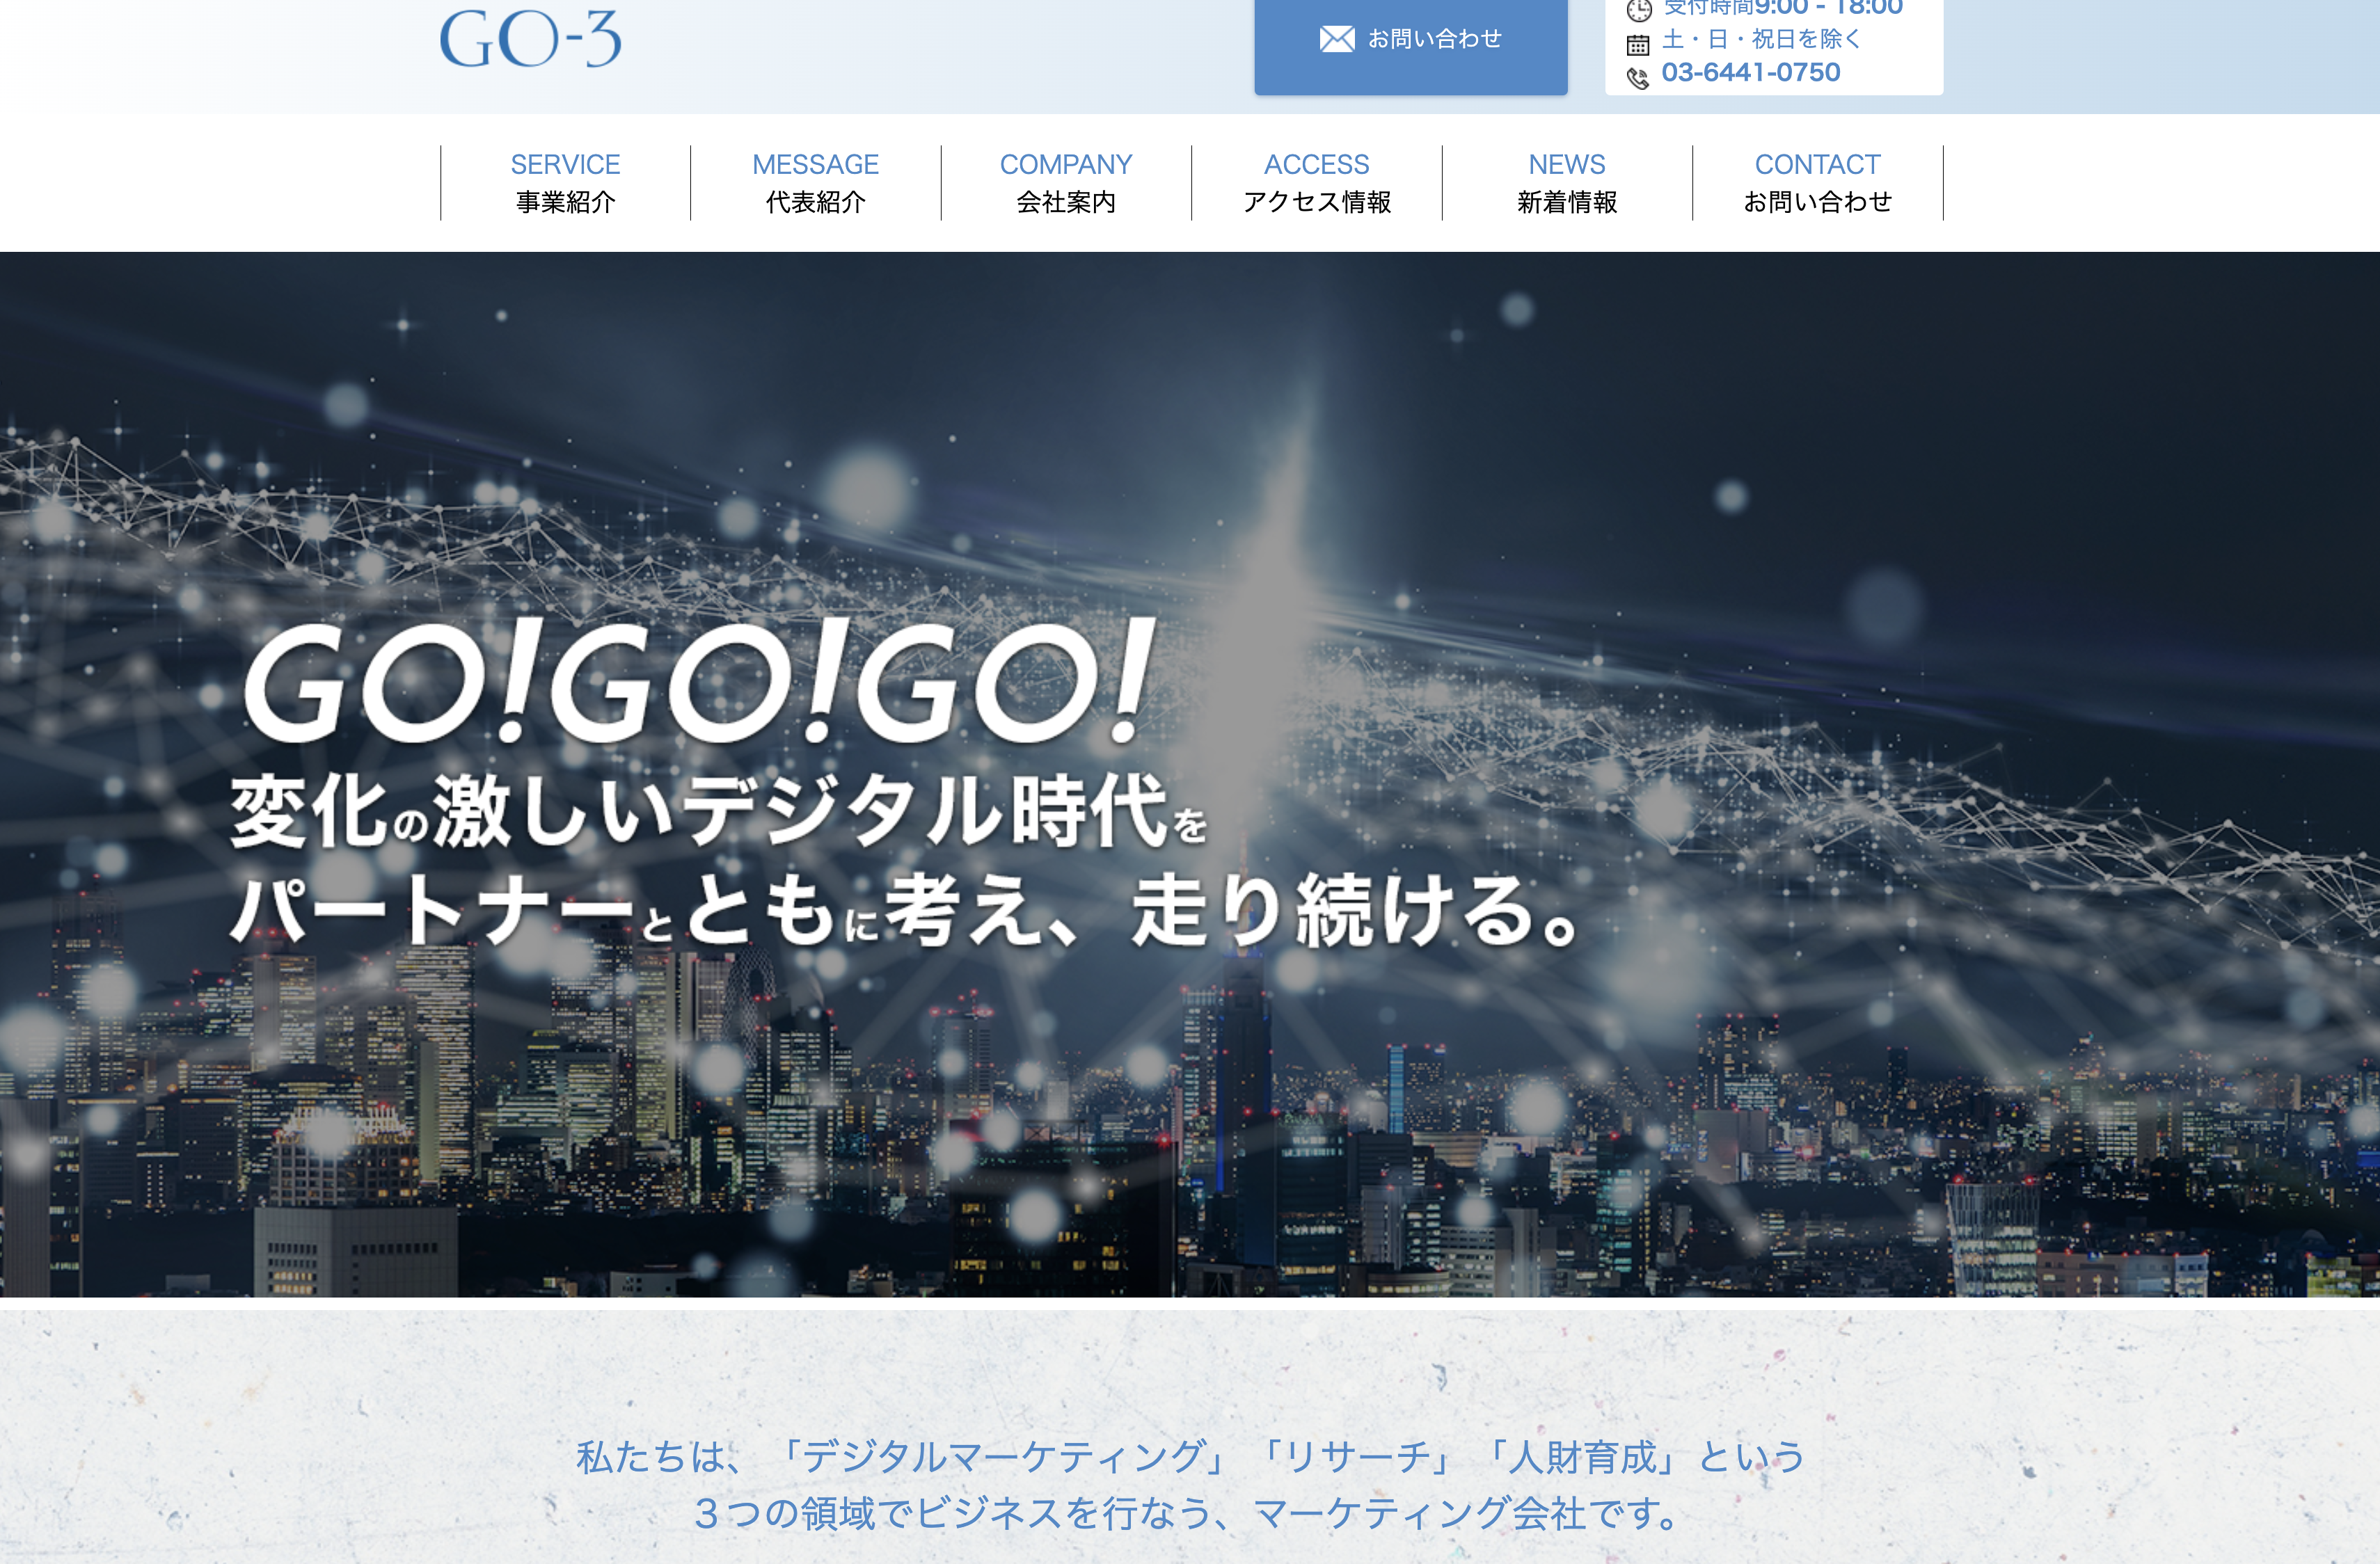 株式会社GO-3の株式会社GO-3:コンサルティングサービス